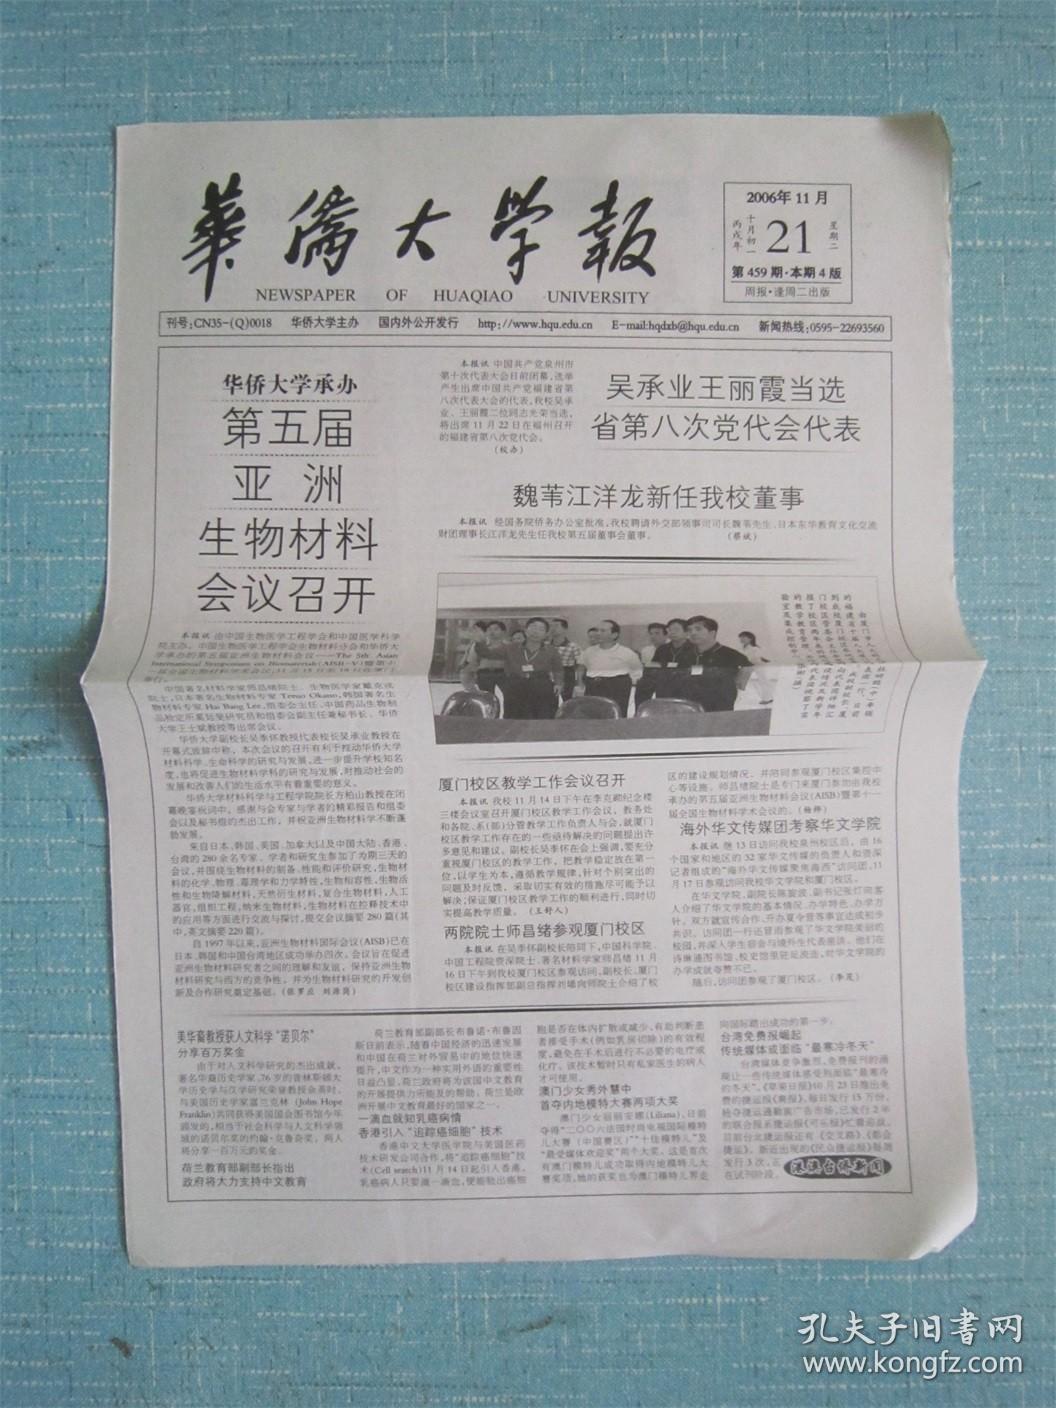 福建普报—— 华侨大学报 2006.11.21日